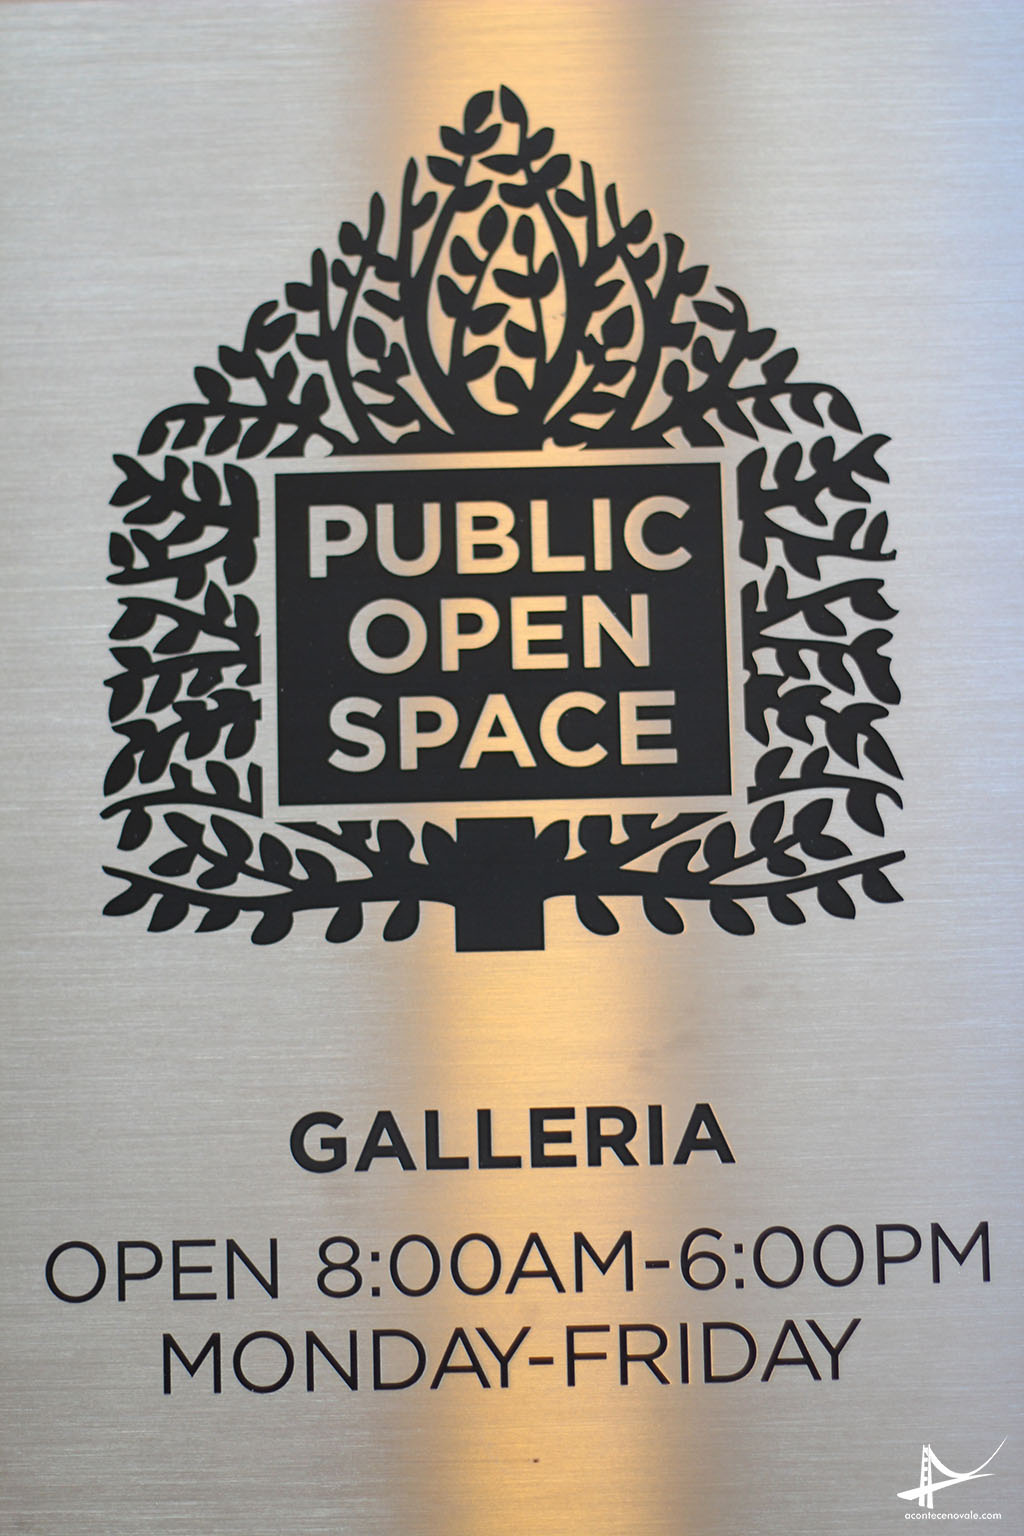 Placa referenciando o espaço aberto ao público